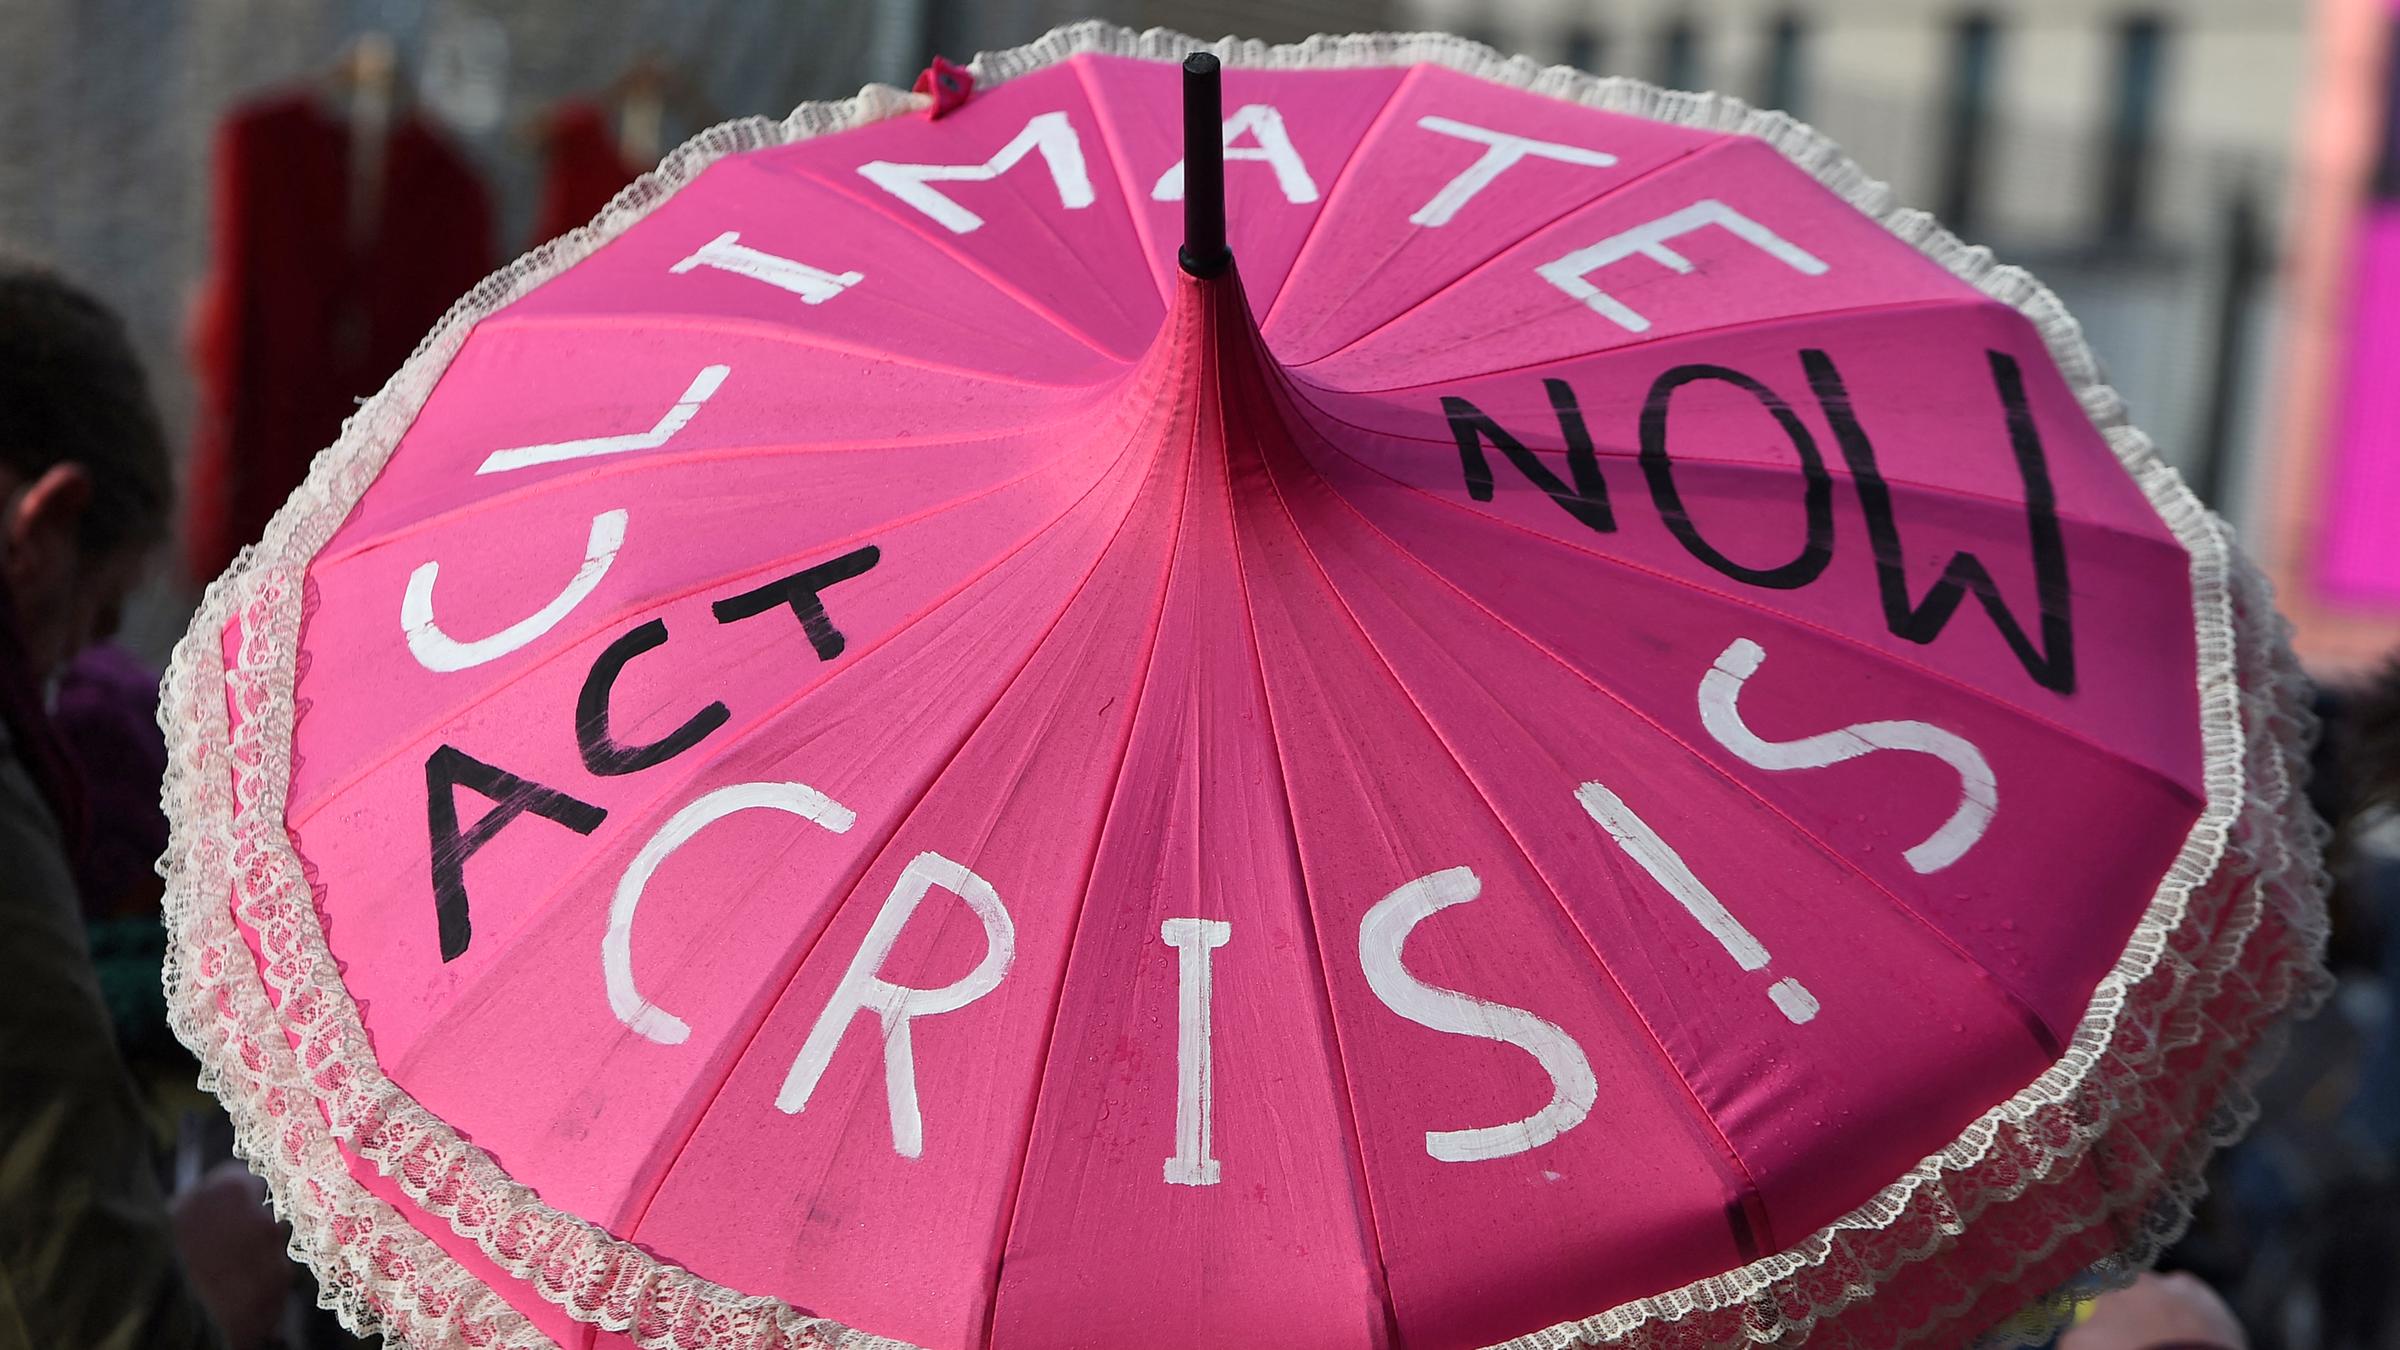 Rosa Schirm eines Klimaaktivisten mit der Aufschrift "Climate crisis act now".